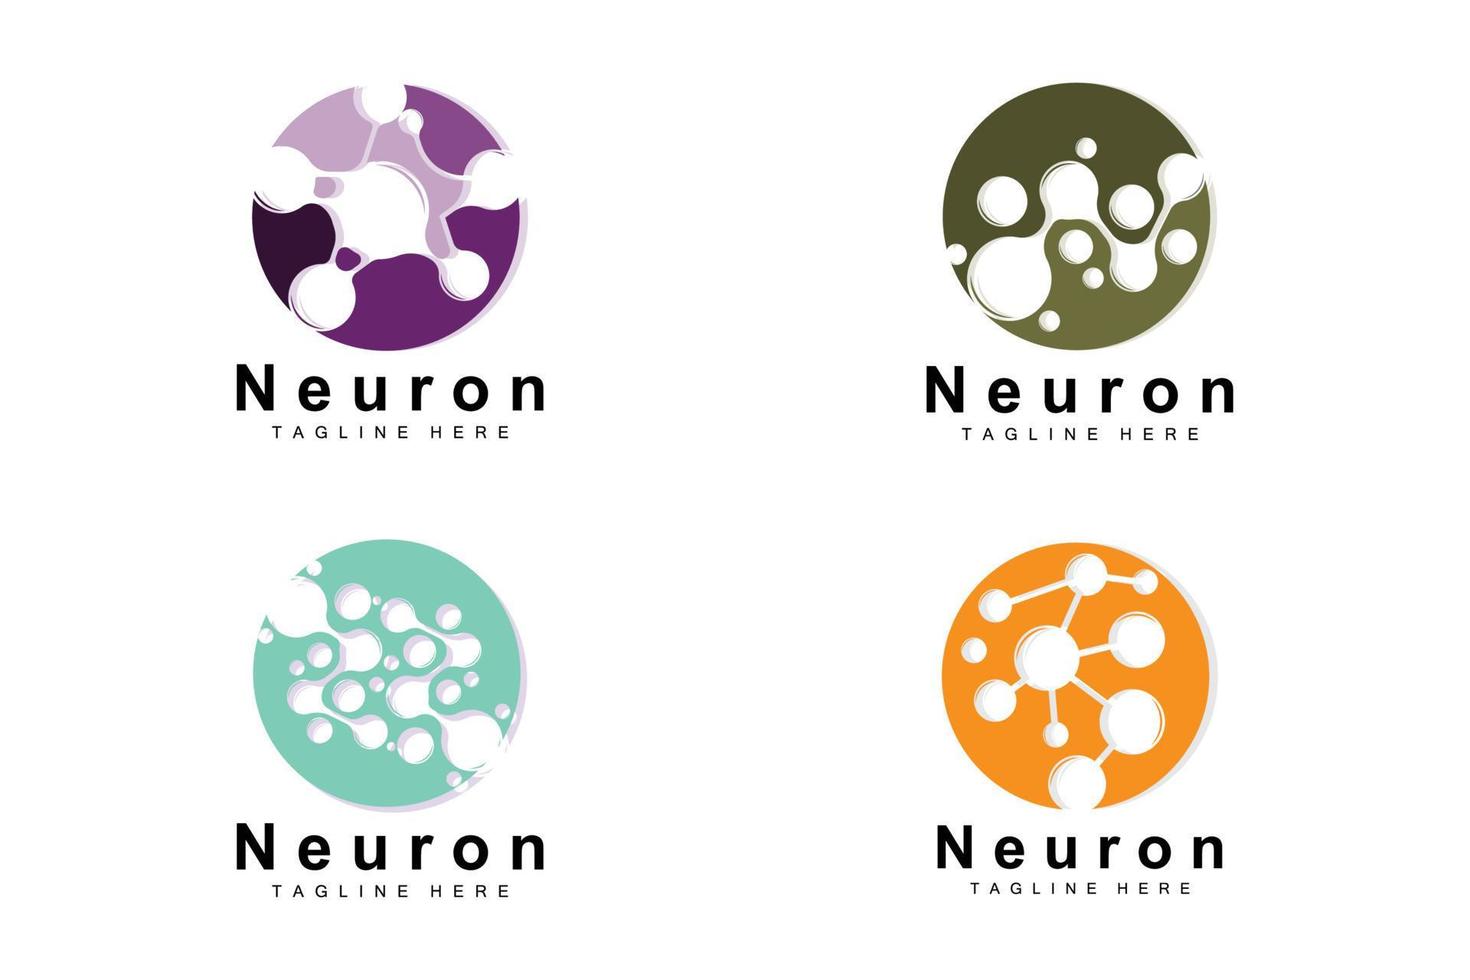 neurone logo design vettore nervo cellula illustrazione molecolare dna Salute marca